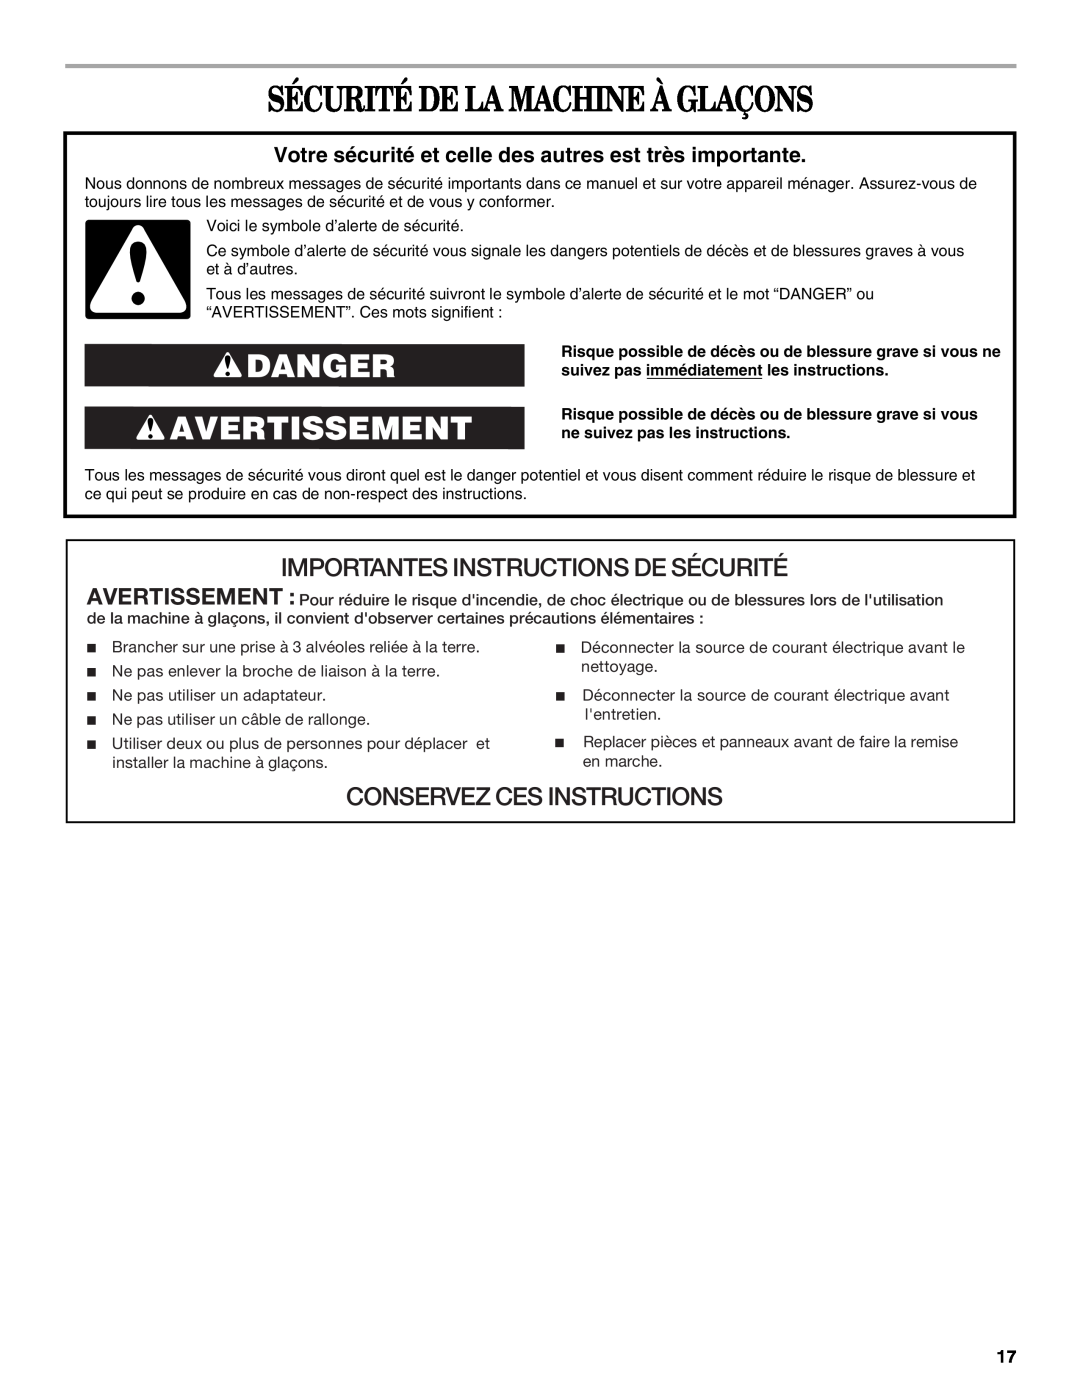 Whirlpool W10206421B manual Sécurité De La Machine À Glaçons, Danger Avertissement, Importantes Instructions De Sécurité 